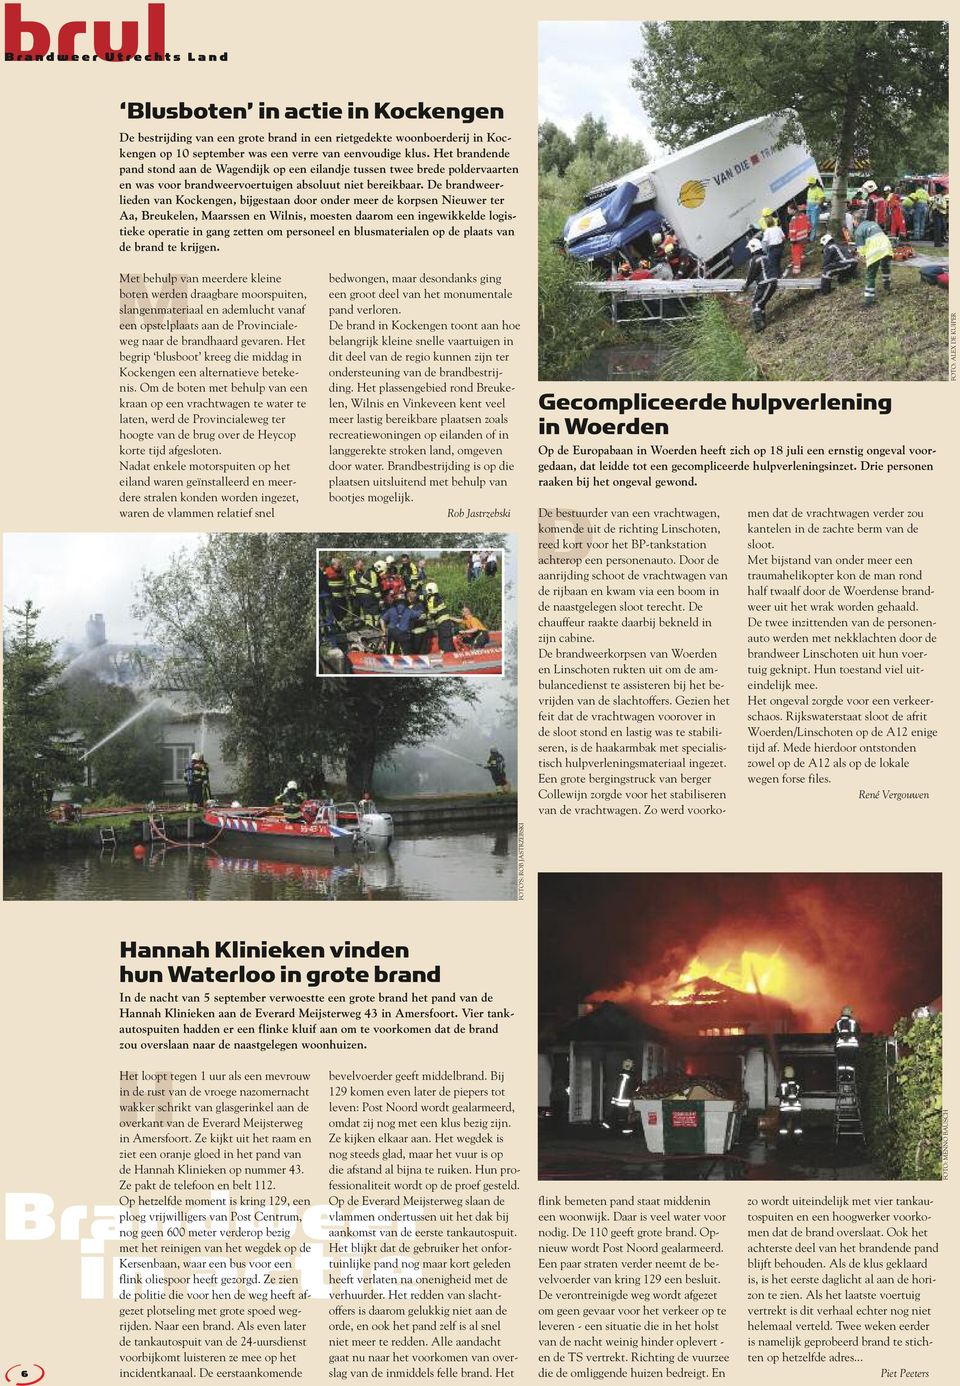 De brandweer - lieden van Kockengen, bijgestaan door onder meer de korpsen Nieuwer ter Aa, Breukelen, Maarssen en Wilnis, moesten daarom een ingewikkelde logistieke operatie in gang zetten om